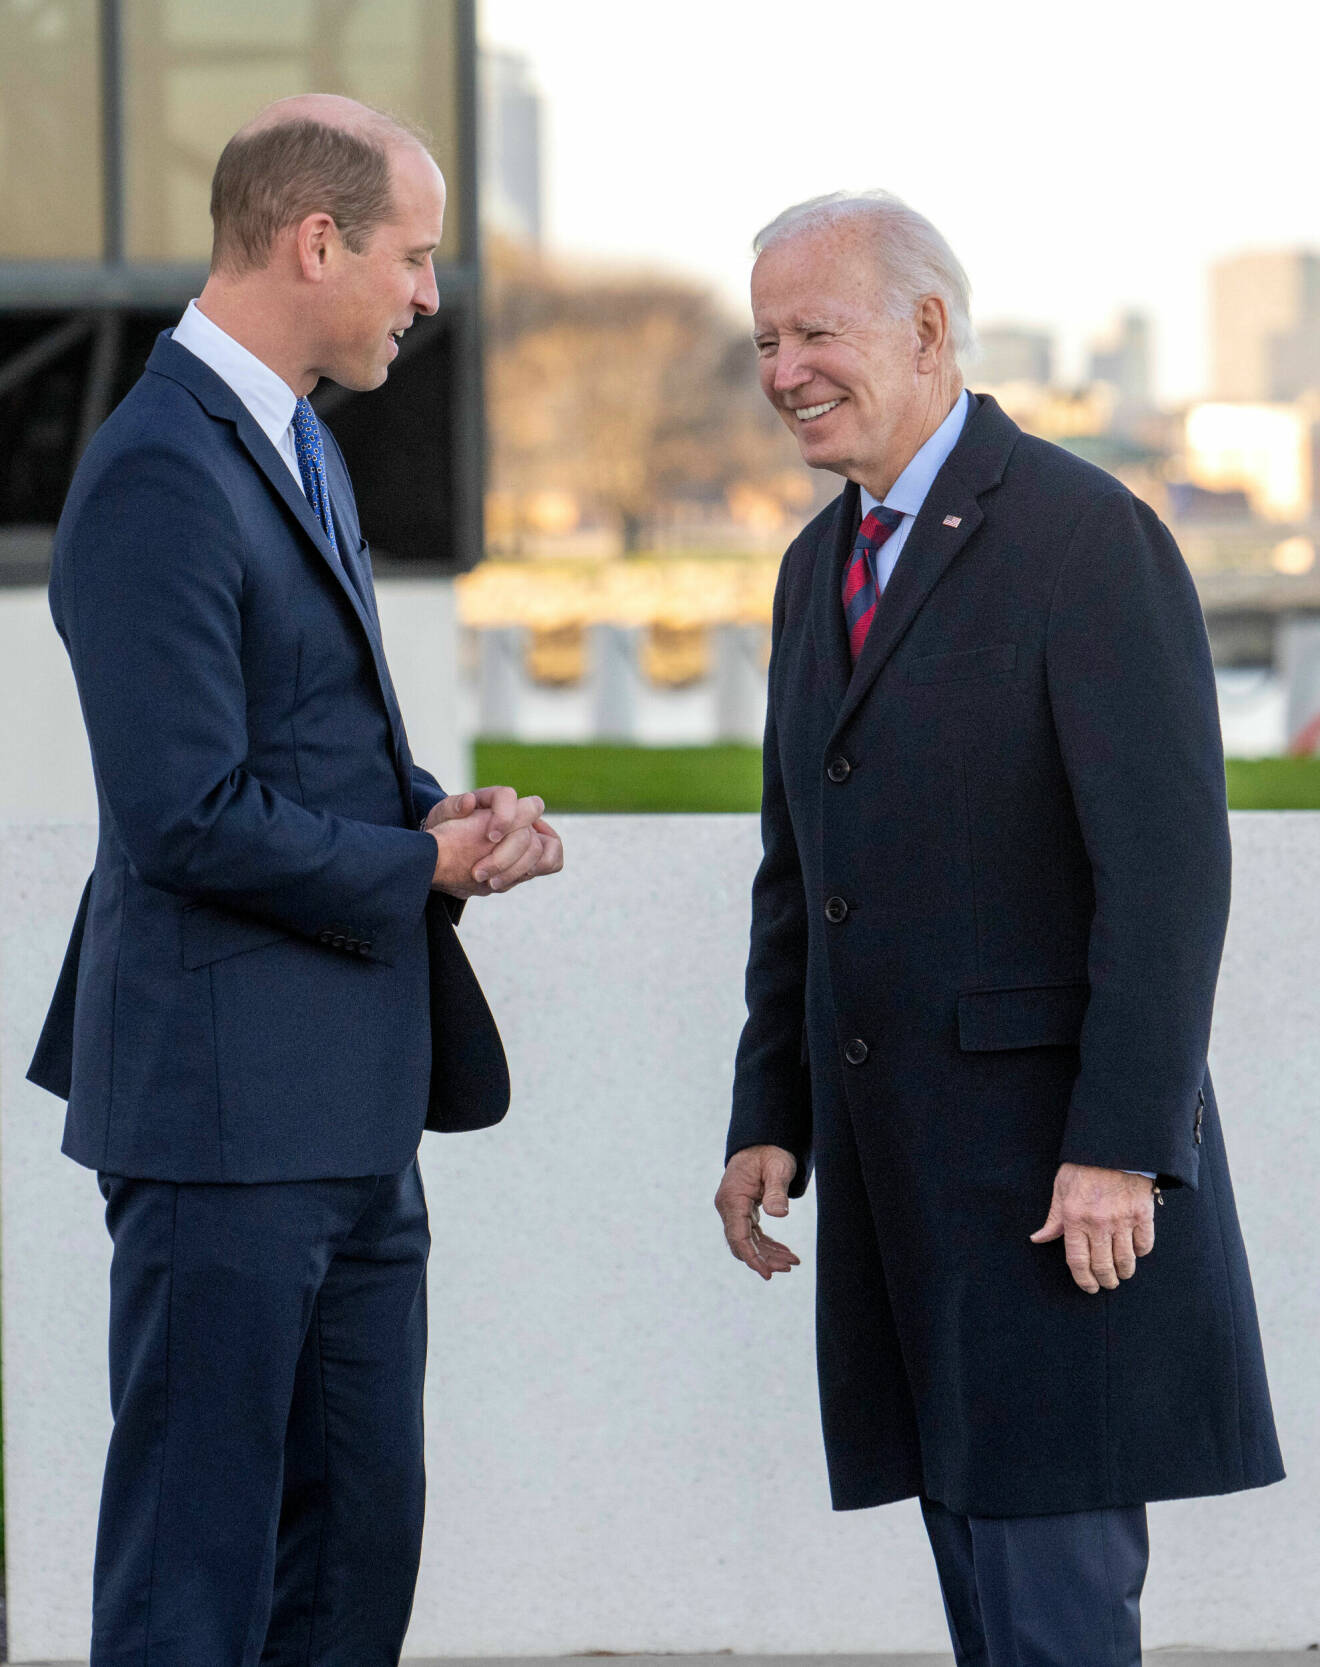 Prins William möter USAs president Joe Biden under sitt besök till USA. Biden skrattar.